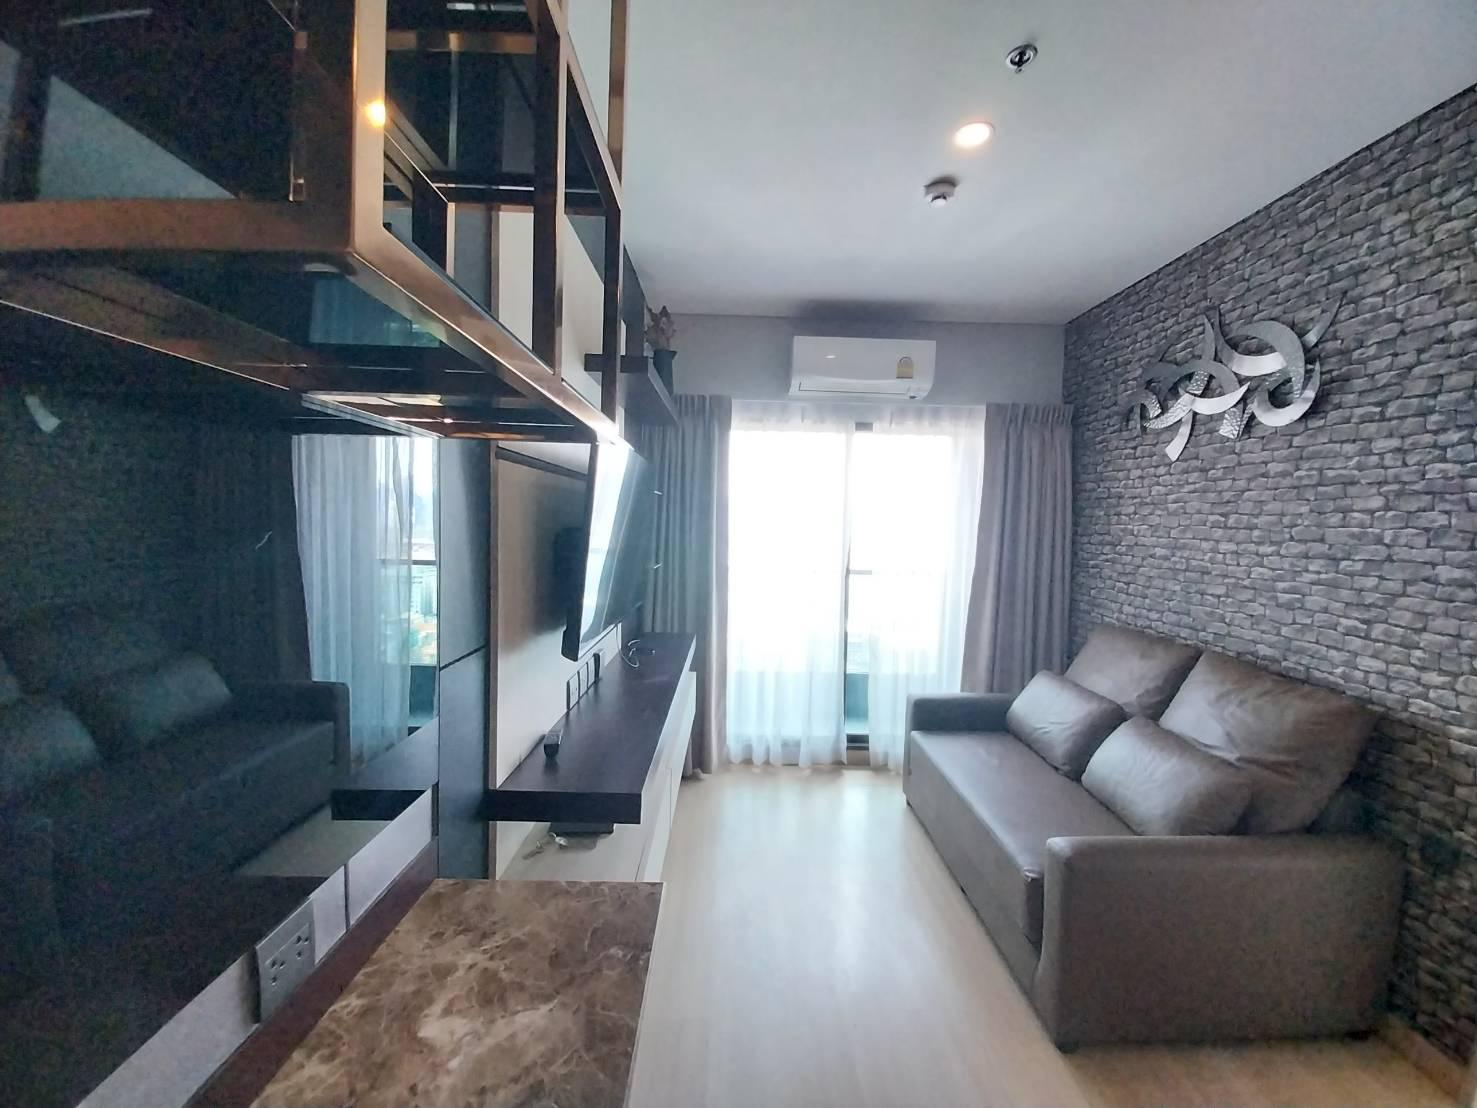 เช่าคอนโด ลุมพินี สวีท ดินแดง – ราชปรารภ คอนโดมิเนียม - Condo Rental Lumpini Suite Din Daeng – Ratchaprarop condominium - 2278837